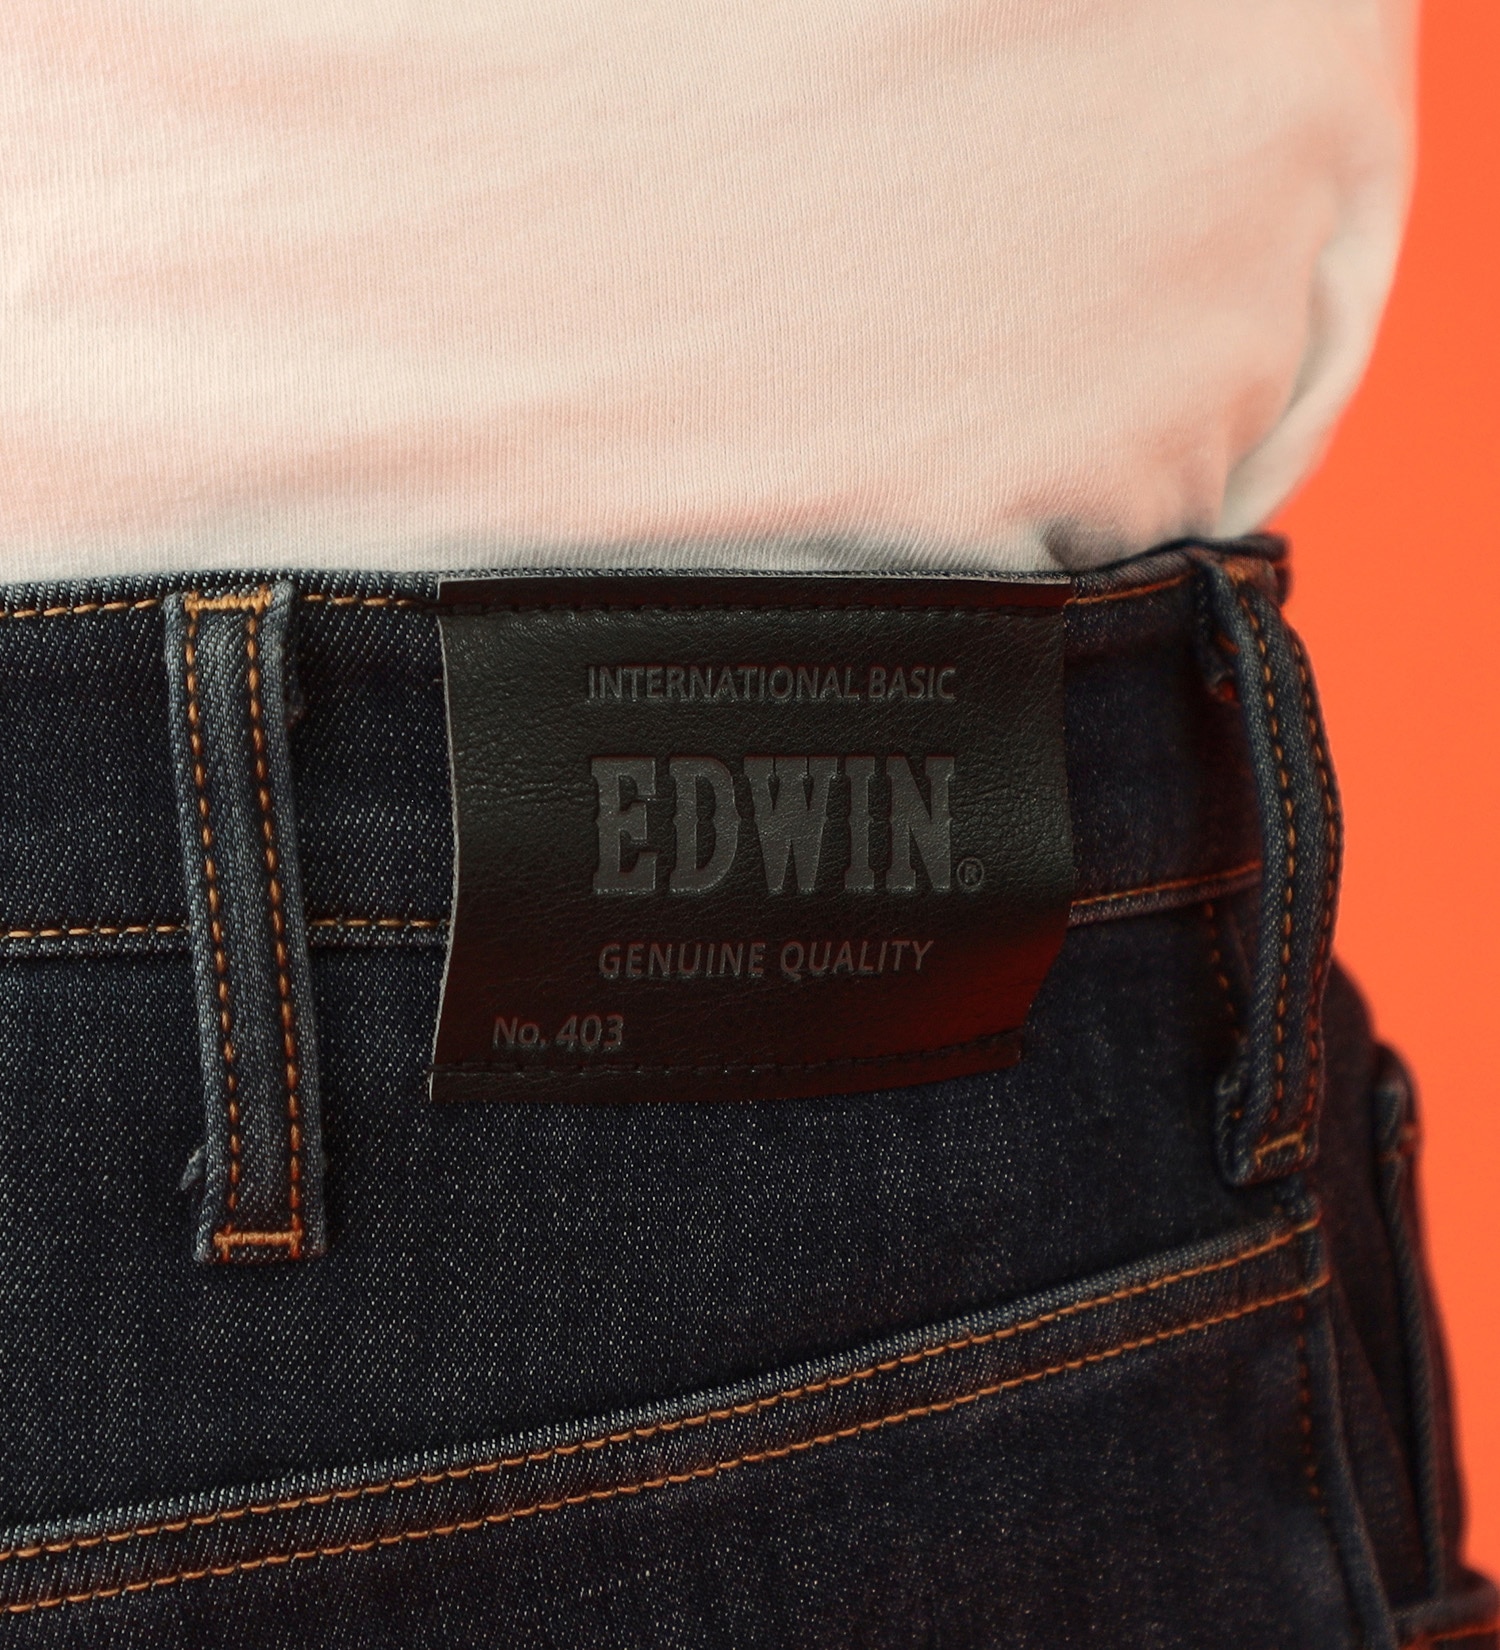 EDWIN(エドウイン)の【先行SALE】【大きいサイズ】2層で暖かい EDWIN インターナショナルベーシック レギュラーストレートパンツ403 WILD FIRE 2層ボンディング構造 【暖】|パンツ/パンツ/メンズ|濃色ブルー